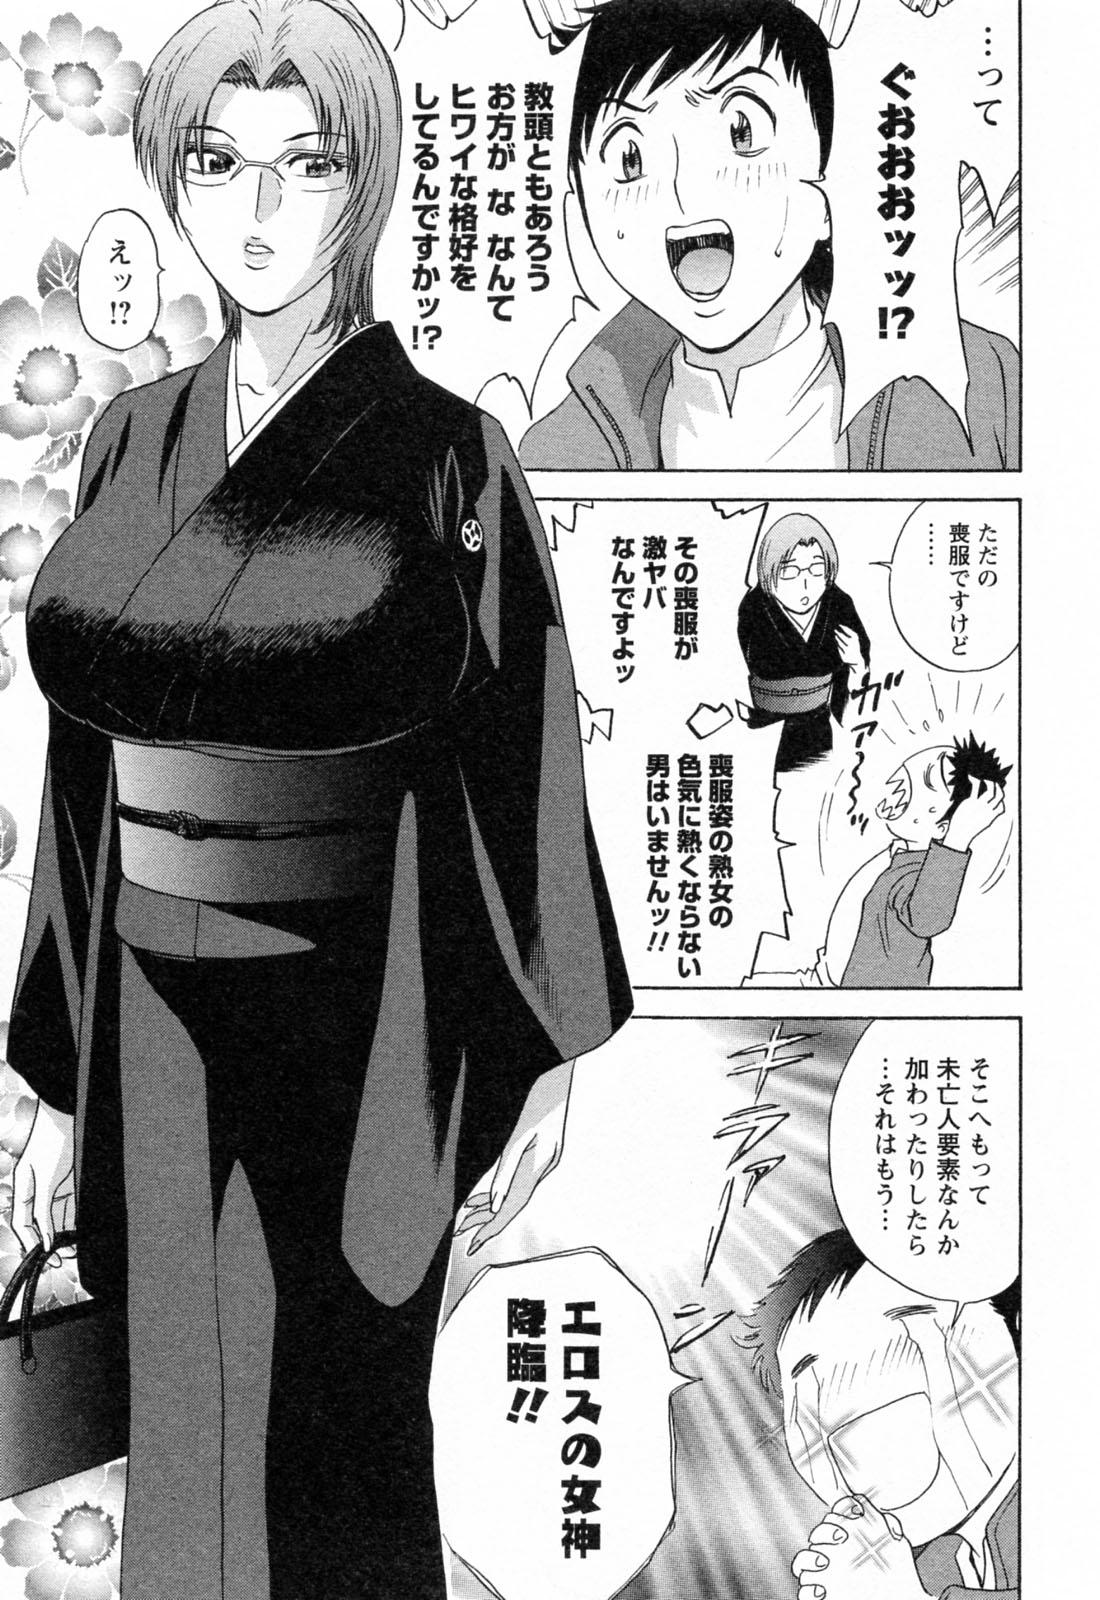 [Hidemaru] Mo-Retsu! Boin Sensei (Boing Boing Teacher) Vol.4 178